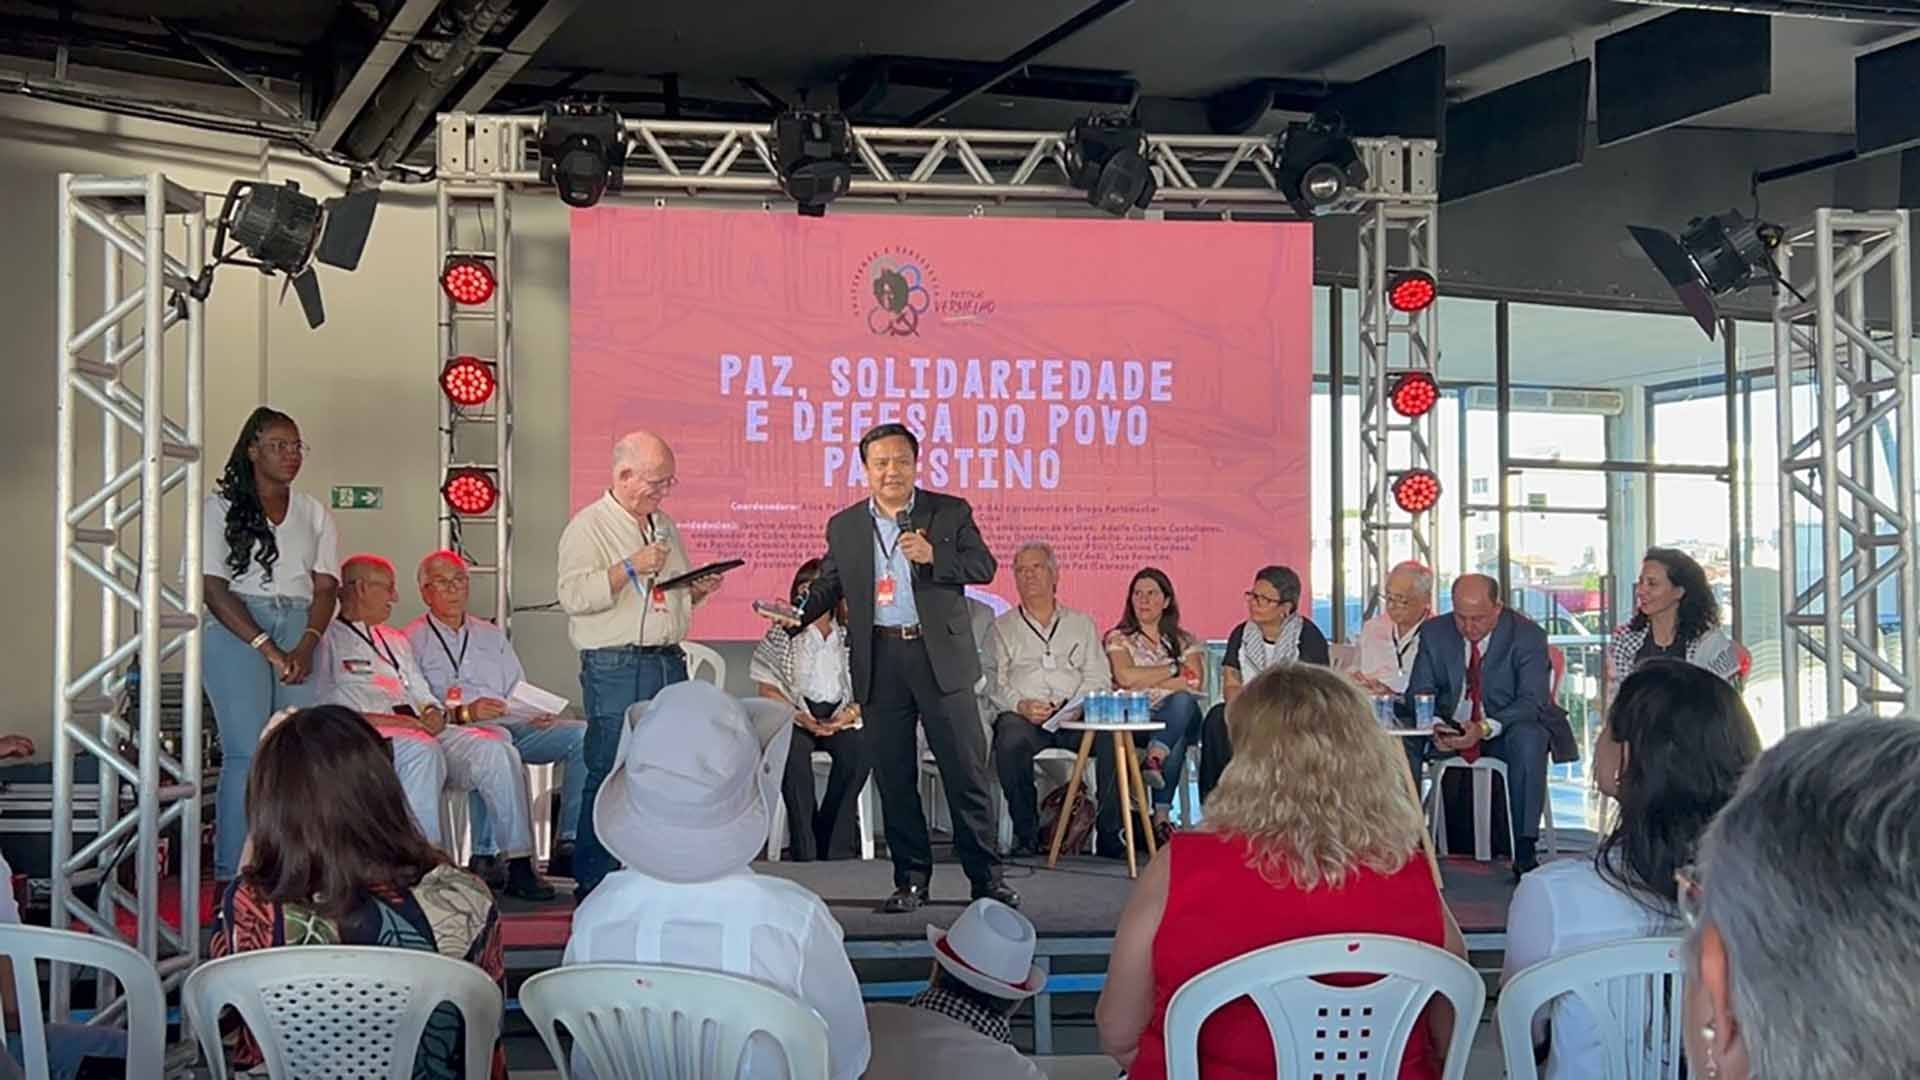 Đại sứ Bùi Văn Nghị tham dự Lễ hội Đỏ lần thứ 2 tại thành phố Salvador, Brazil